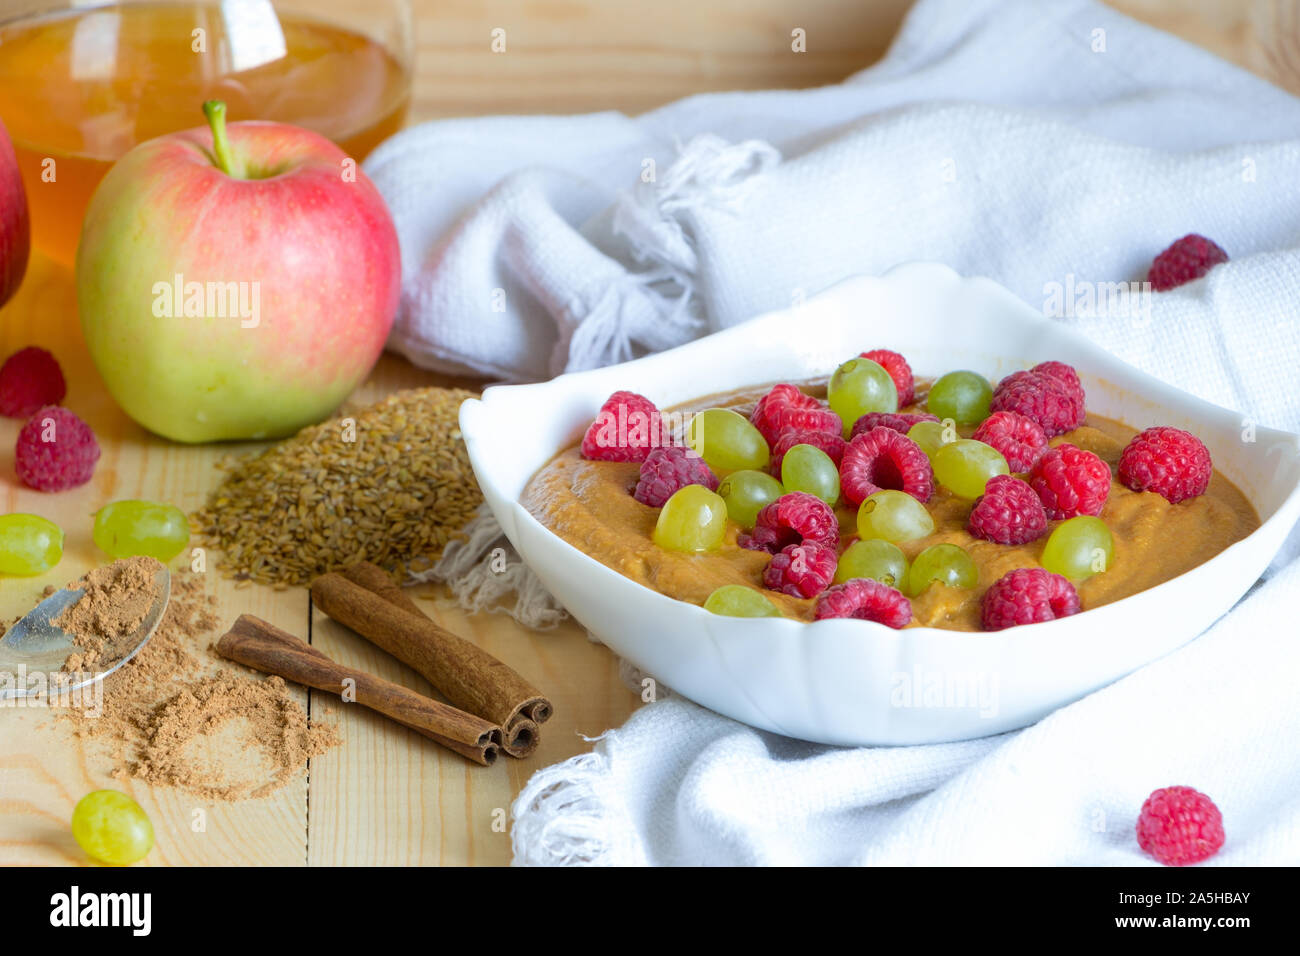 Concept de repas santé. Lin végétalien avec gruau raisin framboise et de raisins secs dans un bol blanc sur tissu. Pomme, miel, cannelle et Banque D'Images